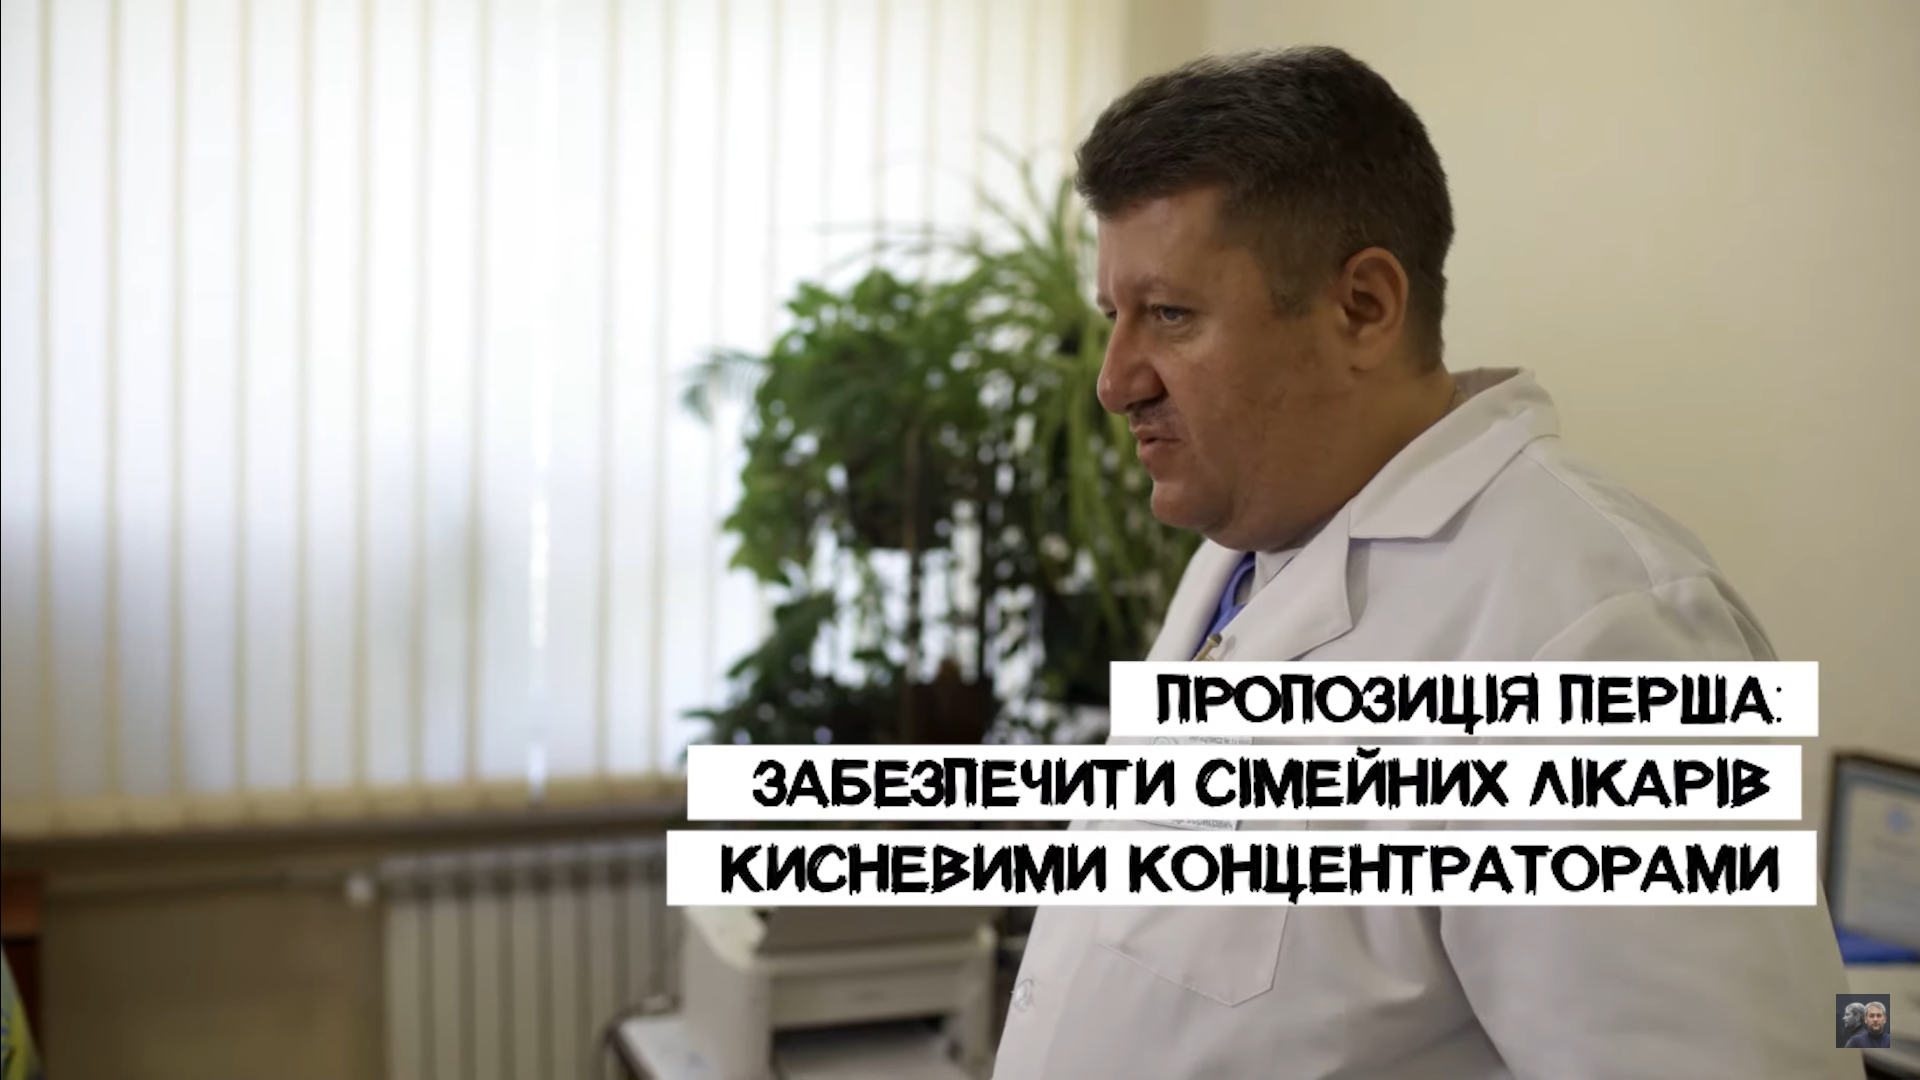 Олександр Власенко, сімейний лікар з Краматорська, пропонує роздати кисневі концентратори на первинку і розвантажити лікарні